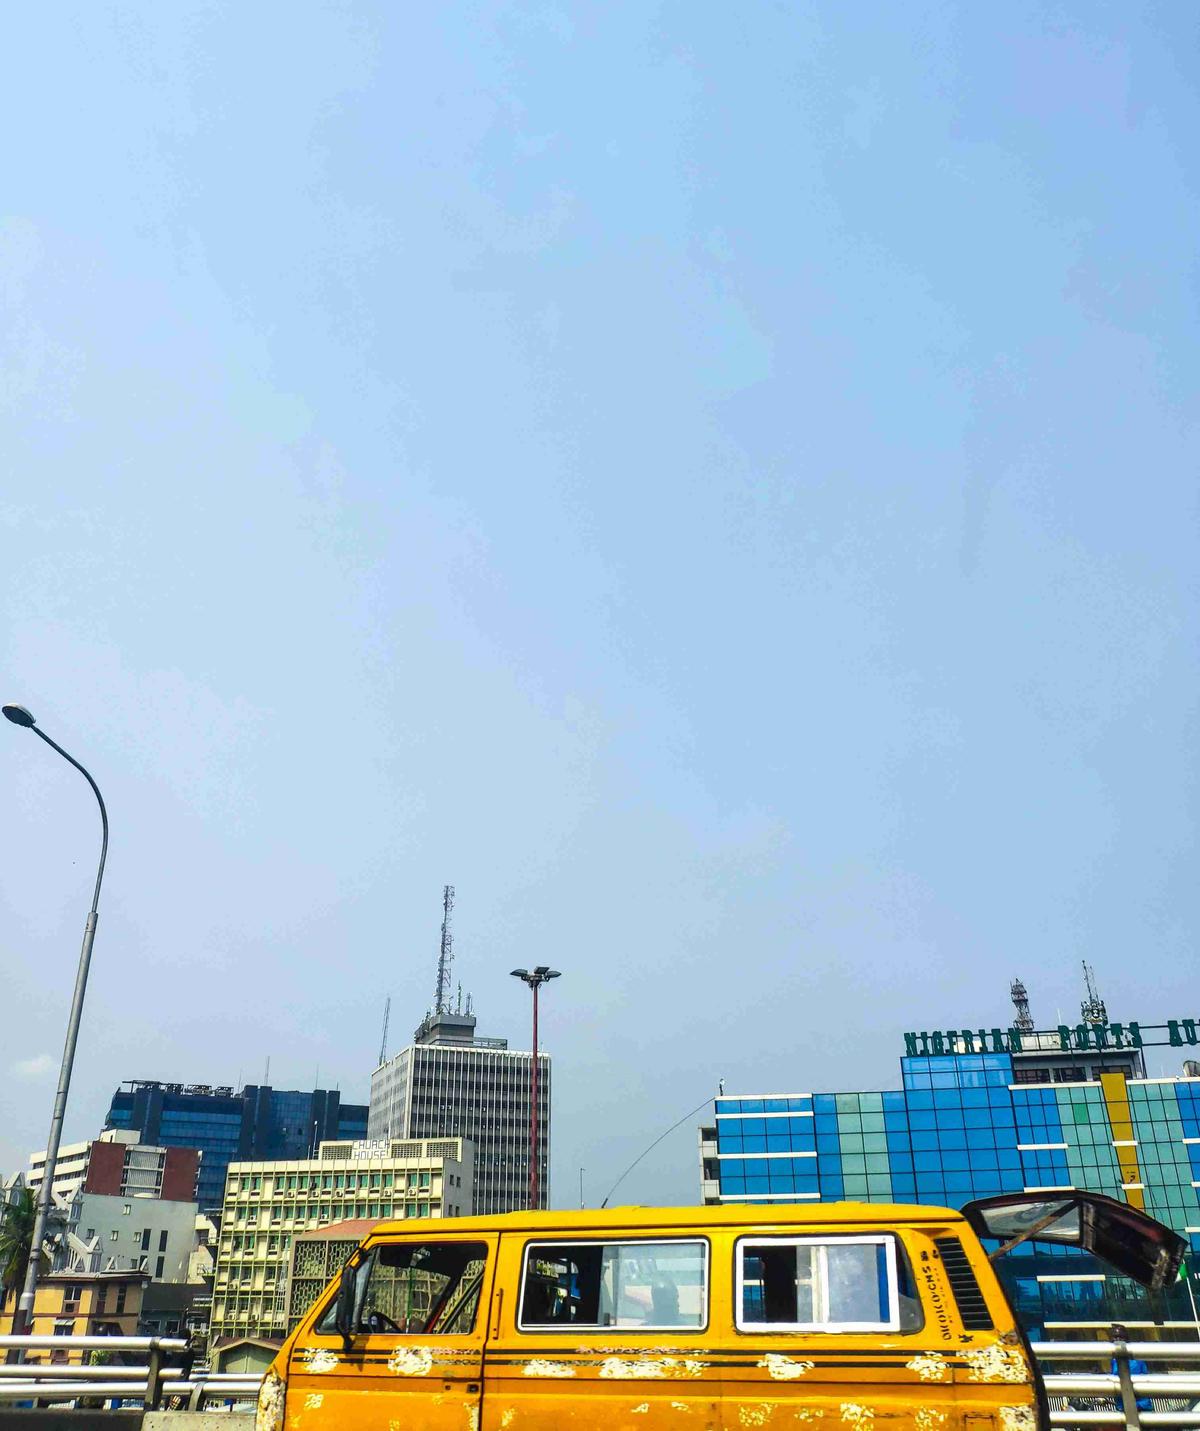 Жълт автобус в градски градски пейзаж с модерни сгради на фона на ясно небе